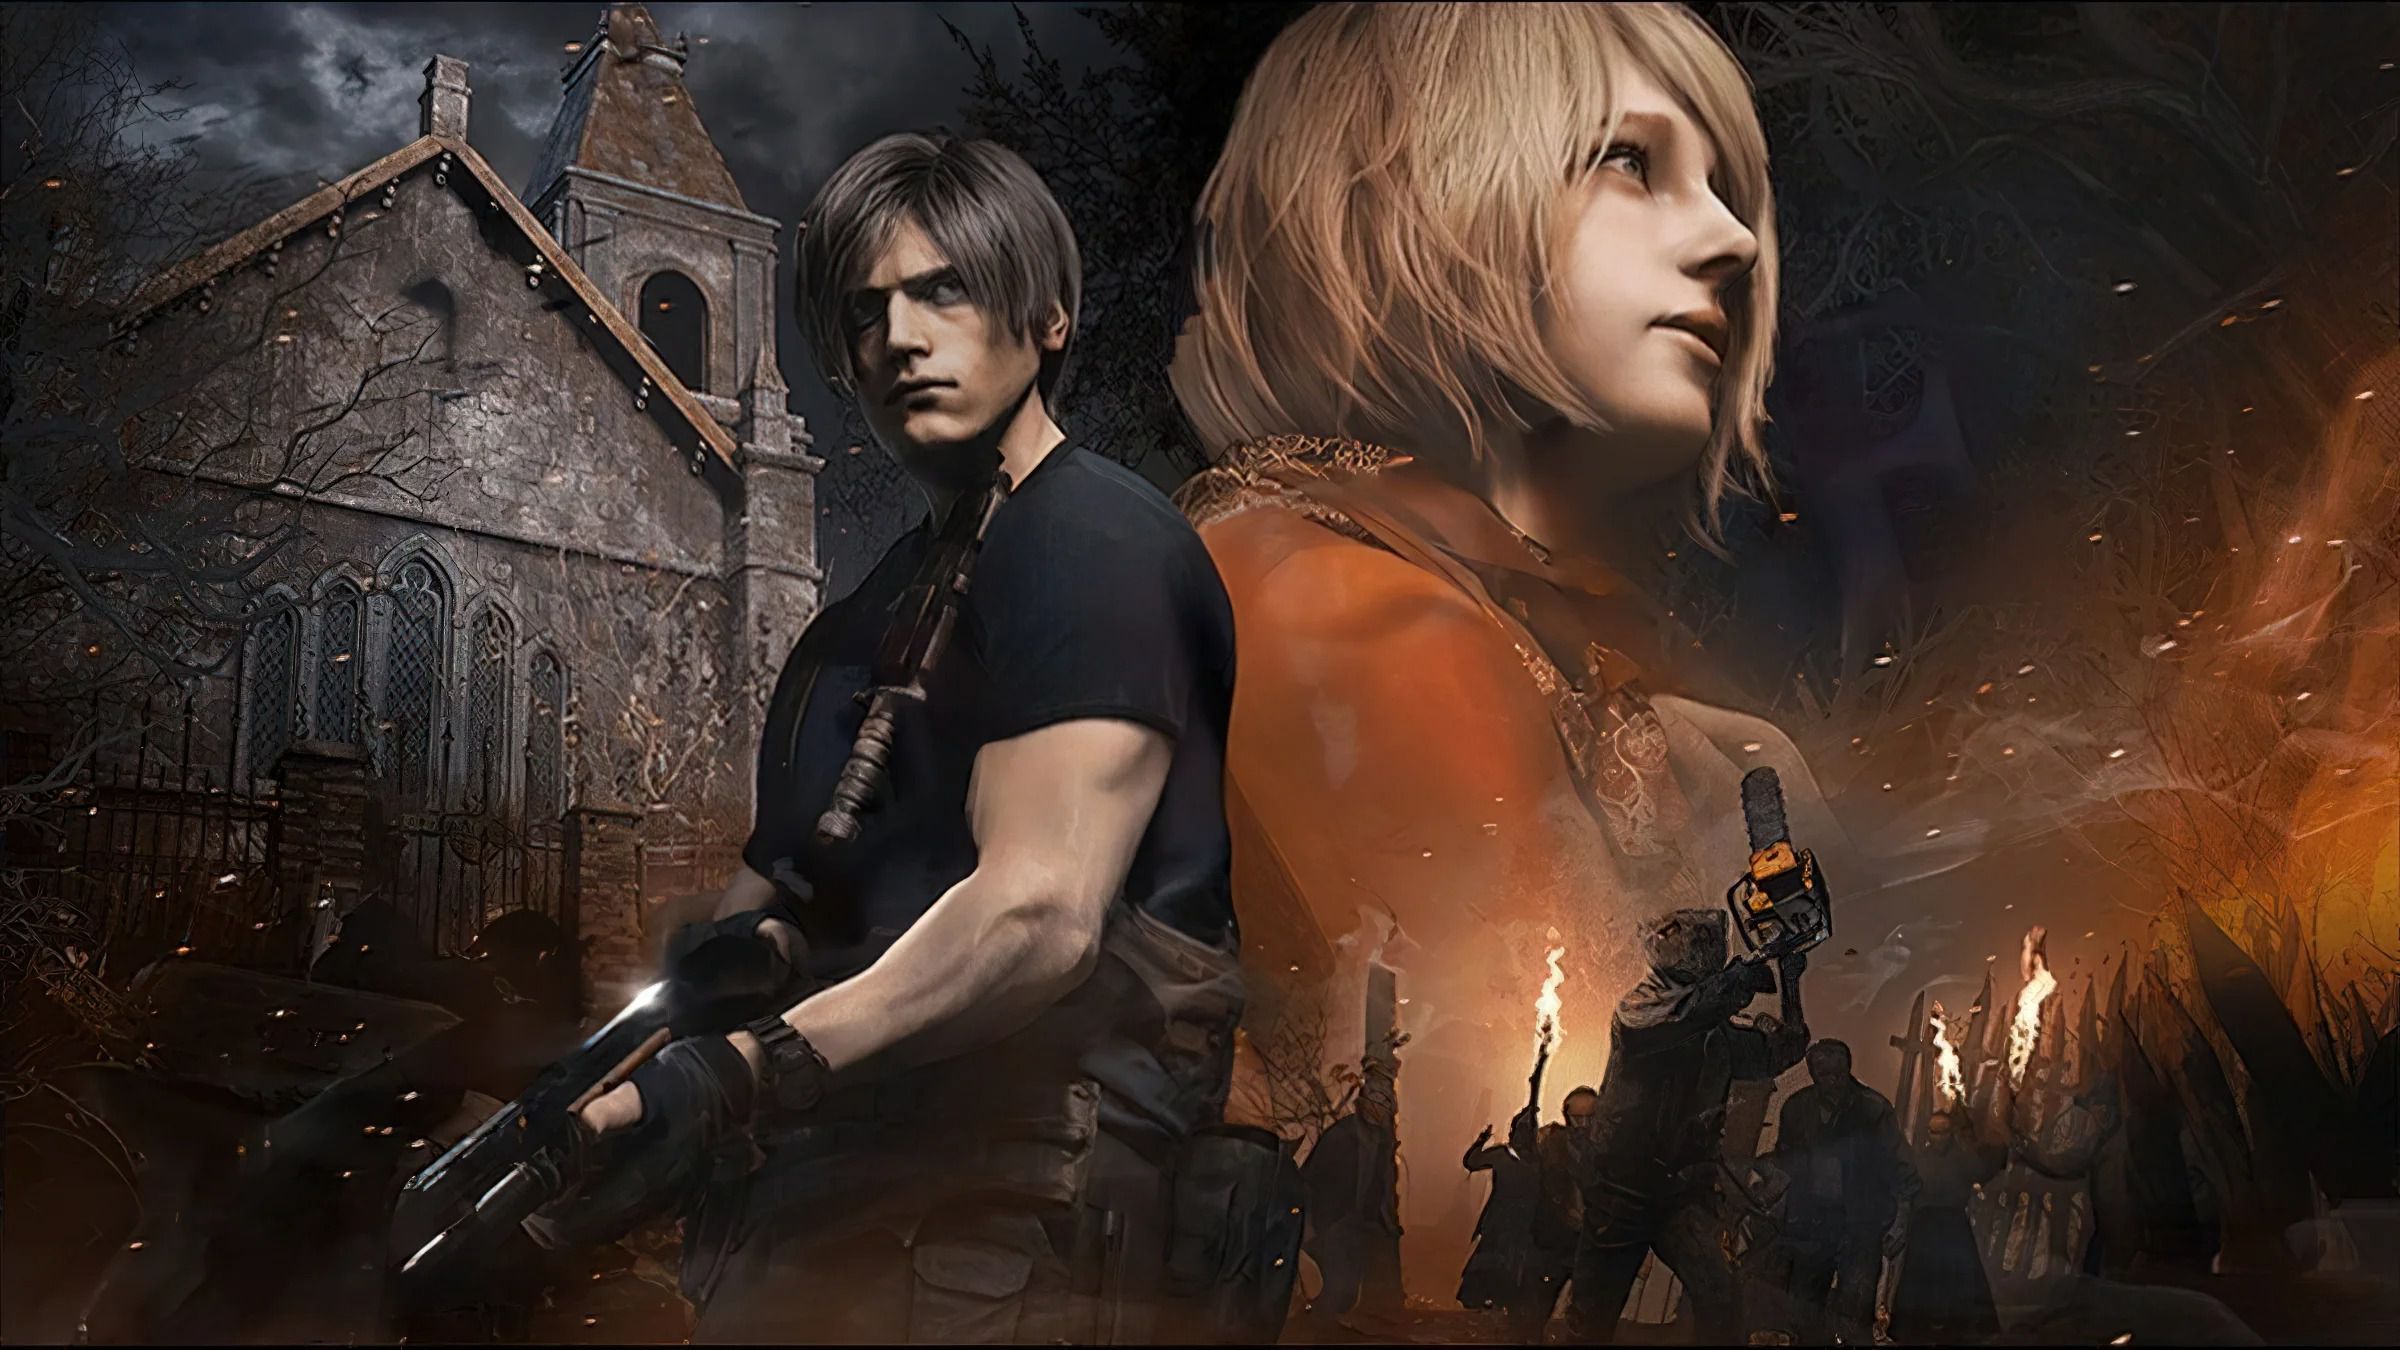 Remake de Resident Evil 4 é ovacionado no Metacritic; veja